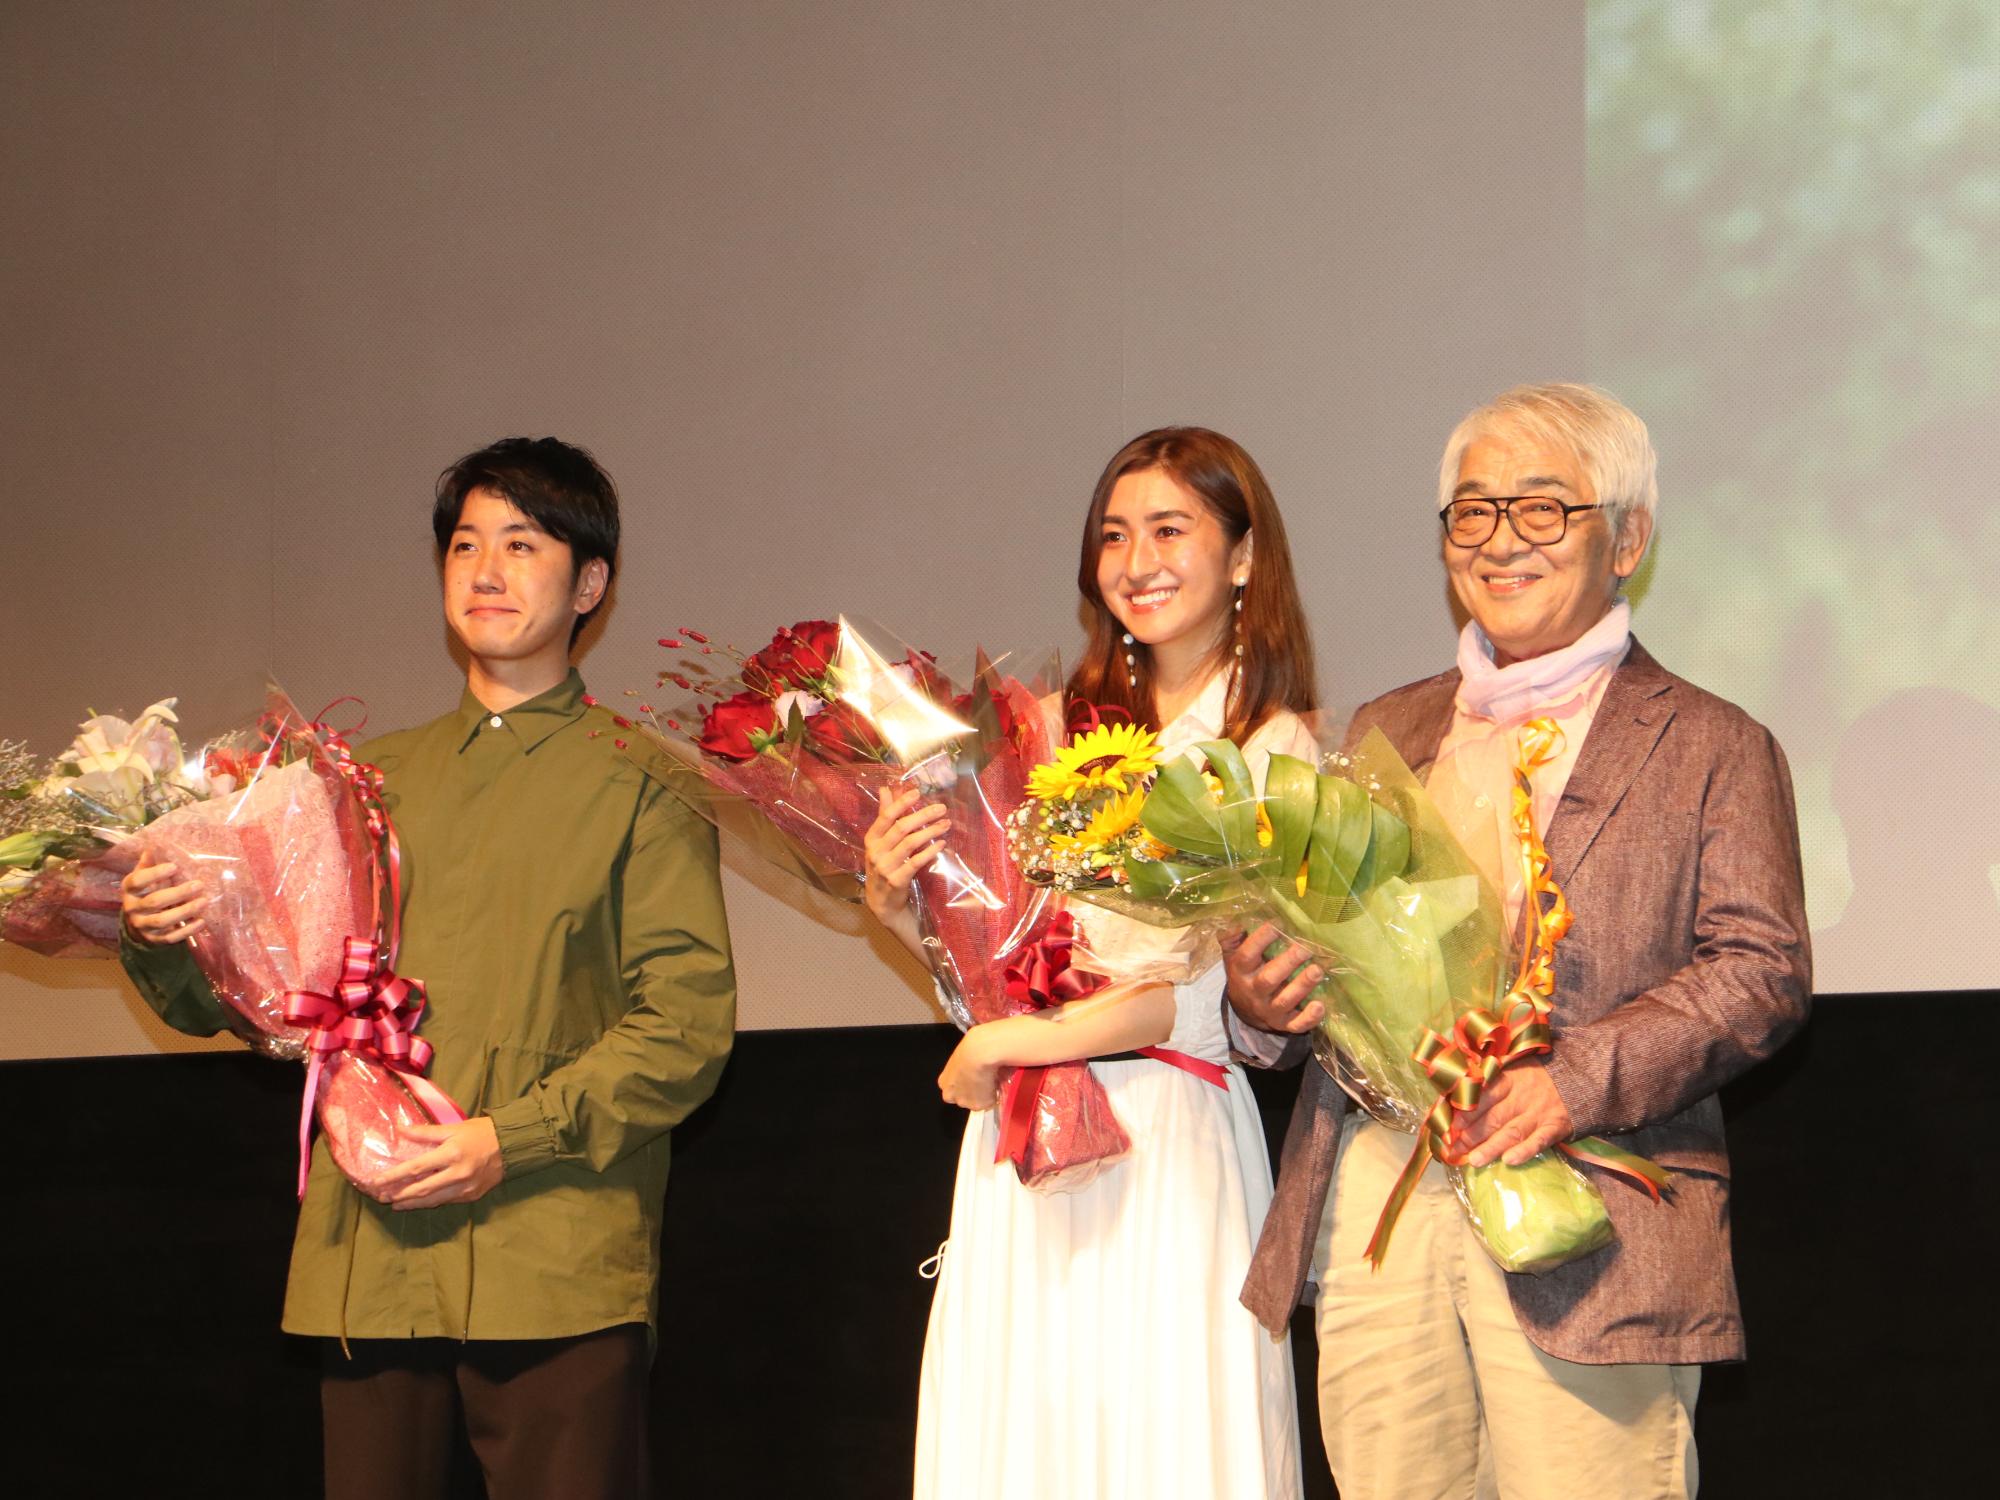 小谷さん、小峰さん、監督が花束を持っている